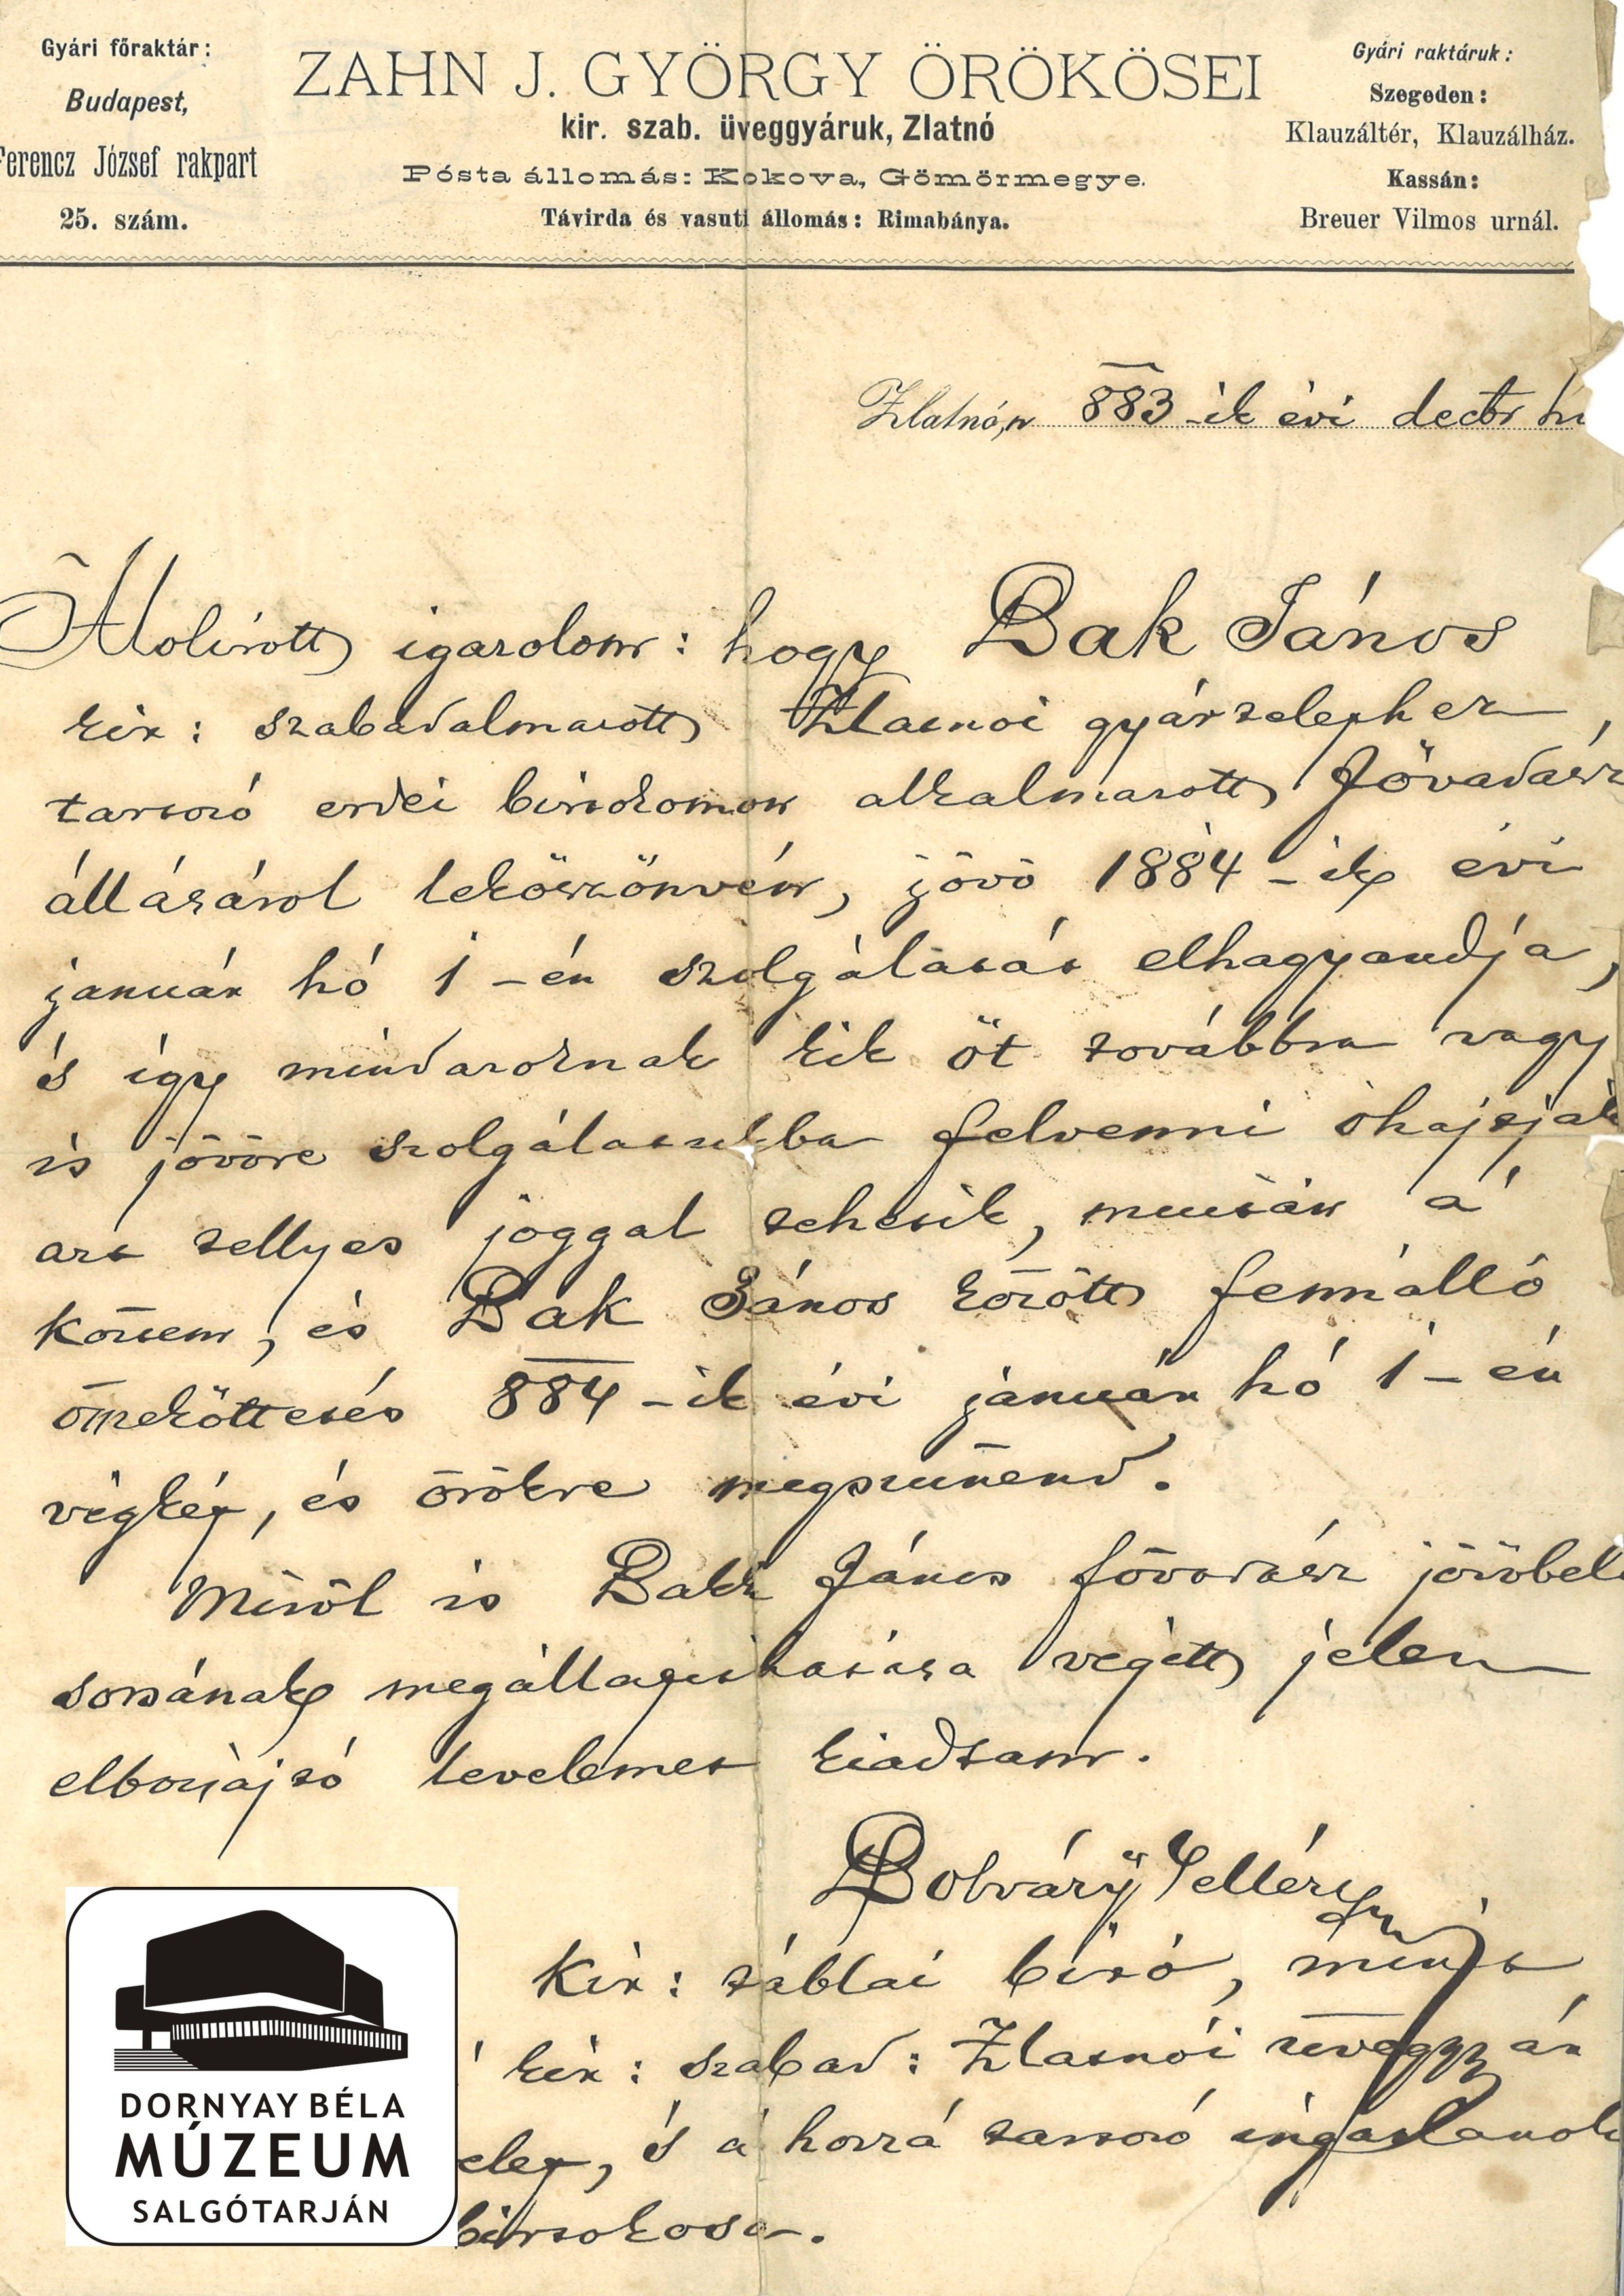 Bak János fővadász elbocsájtó levele (Dornyay Béla Múzeum, Salgótarján CC BY-NC-SA)